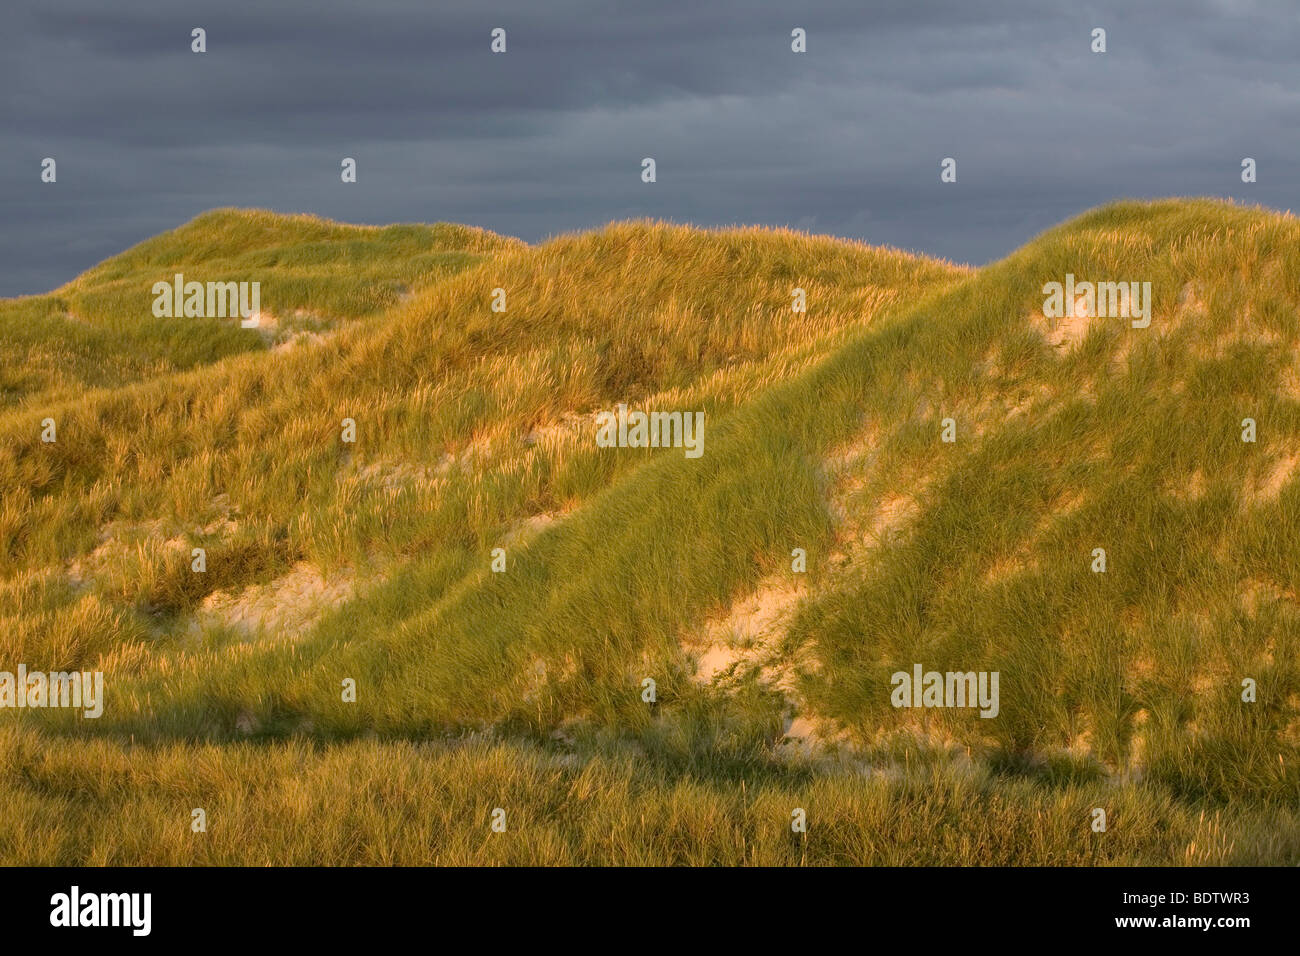 Duenenlandschaft, Dune scenery / Jylland - Denmark Stock Photo